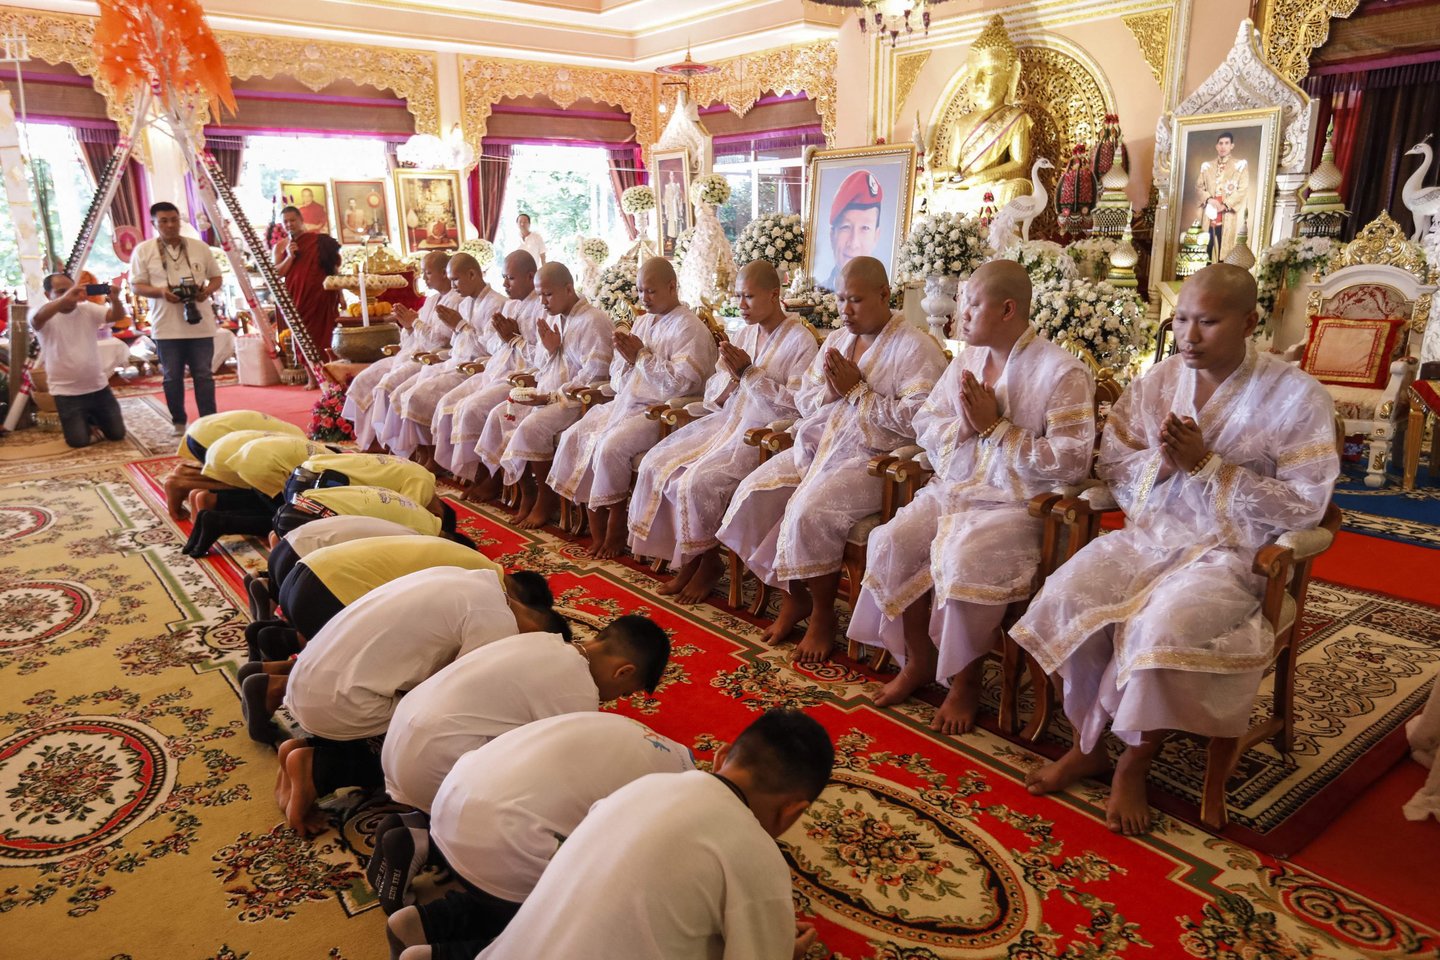  Dauguma Tailando berniukų futbolo komandos narių, kurie anksčiau šį mėnesį buvo išgelbėti iš užlieto urvo, kitą savaitę bus įšventinti budistų ceremonijos metu.<br> AFP/Scanpix nuotr.